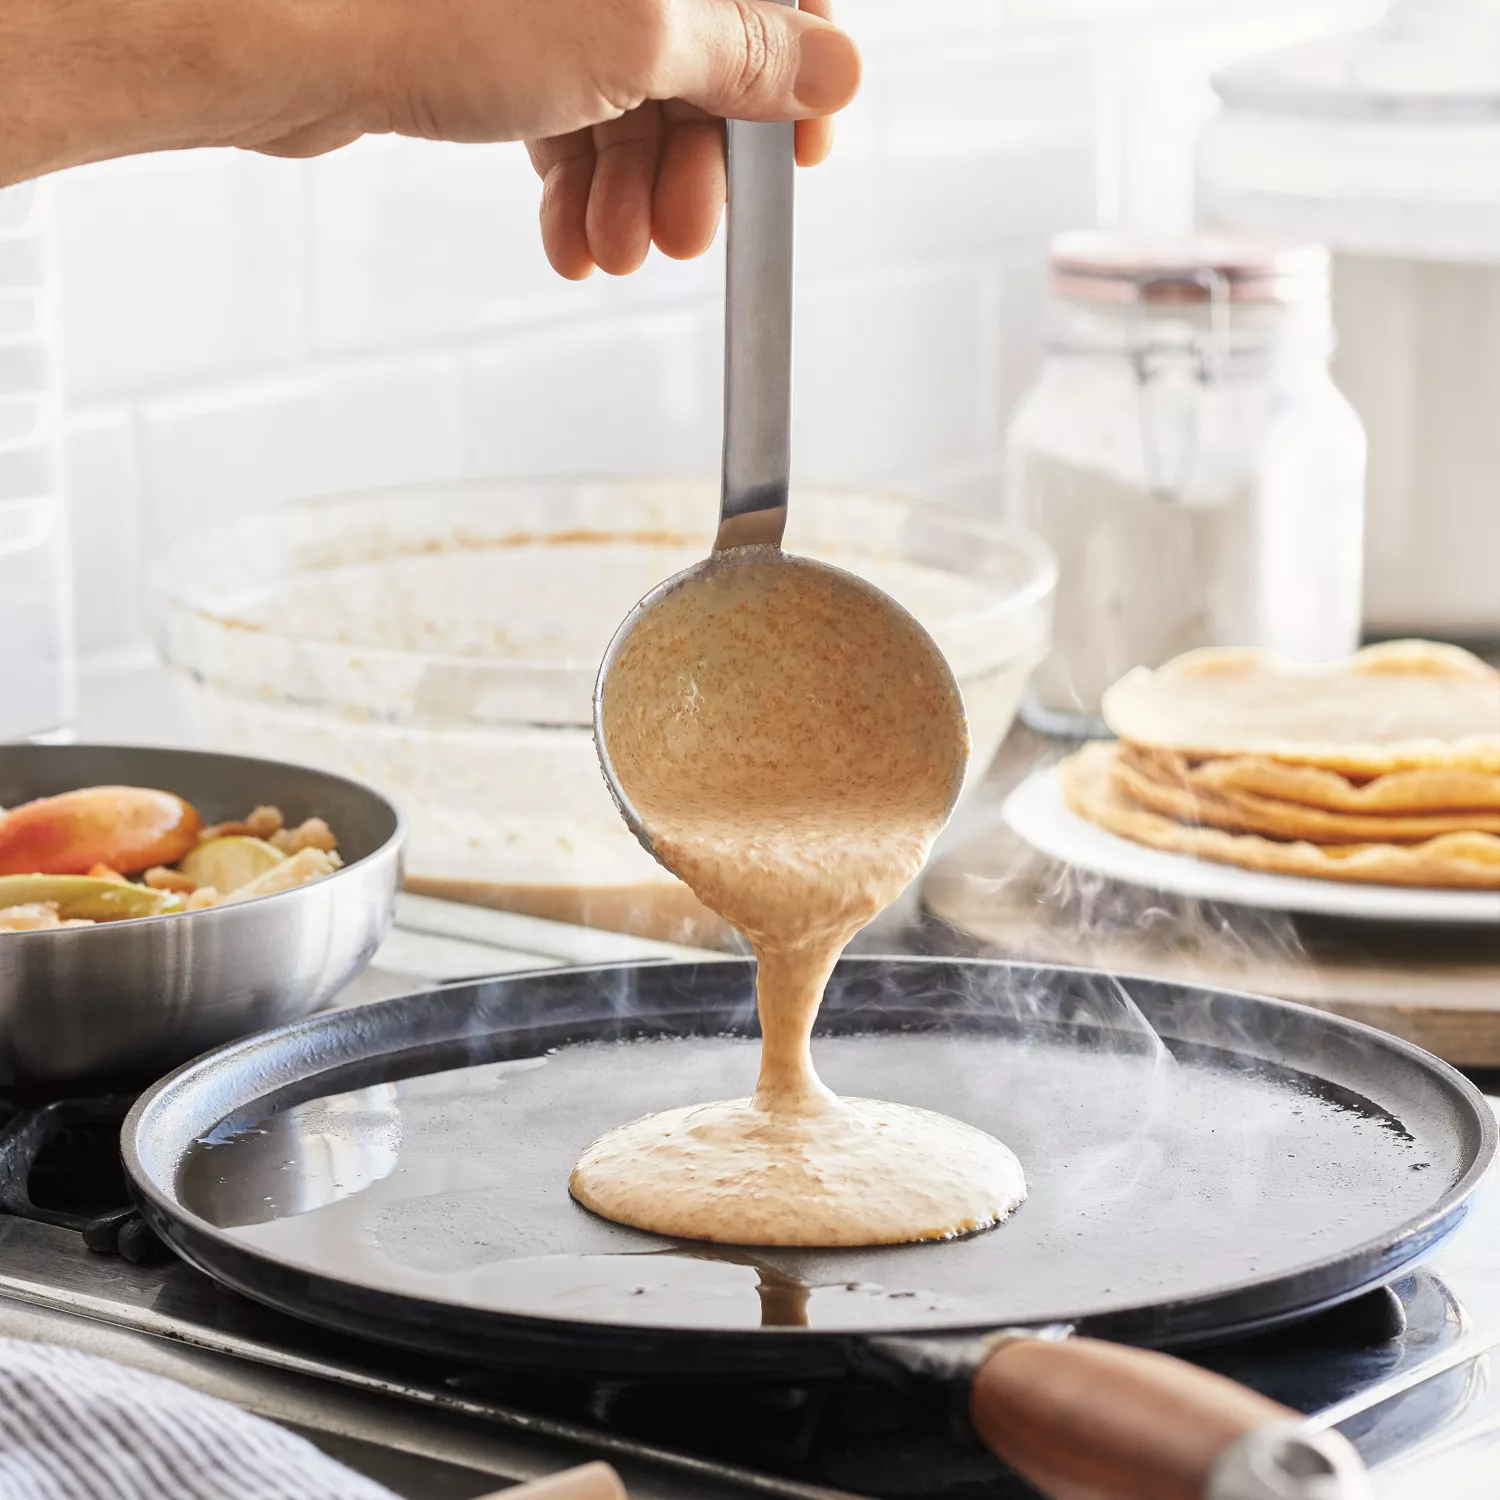 Staub pancake/crepe pan 30 cm, black  Advantageously shopping at